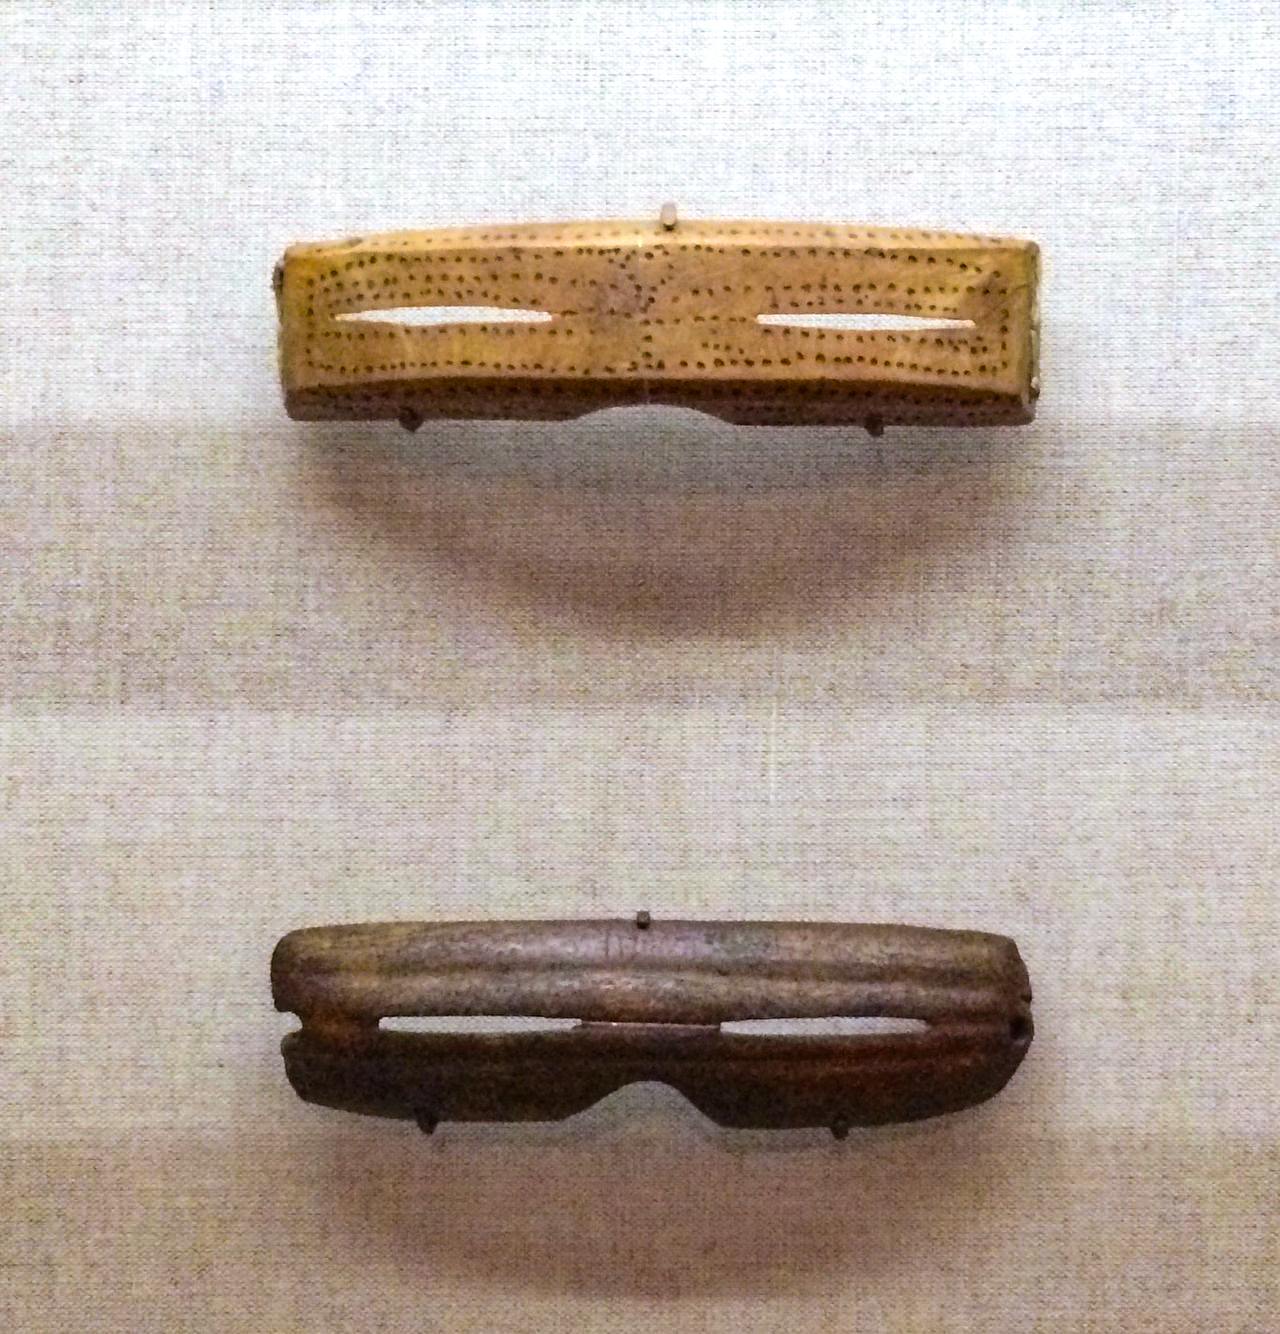 Kacamata salju Inuit yang diukir dari tulang, gading, kayu atau tanduk 3